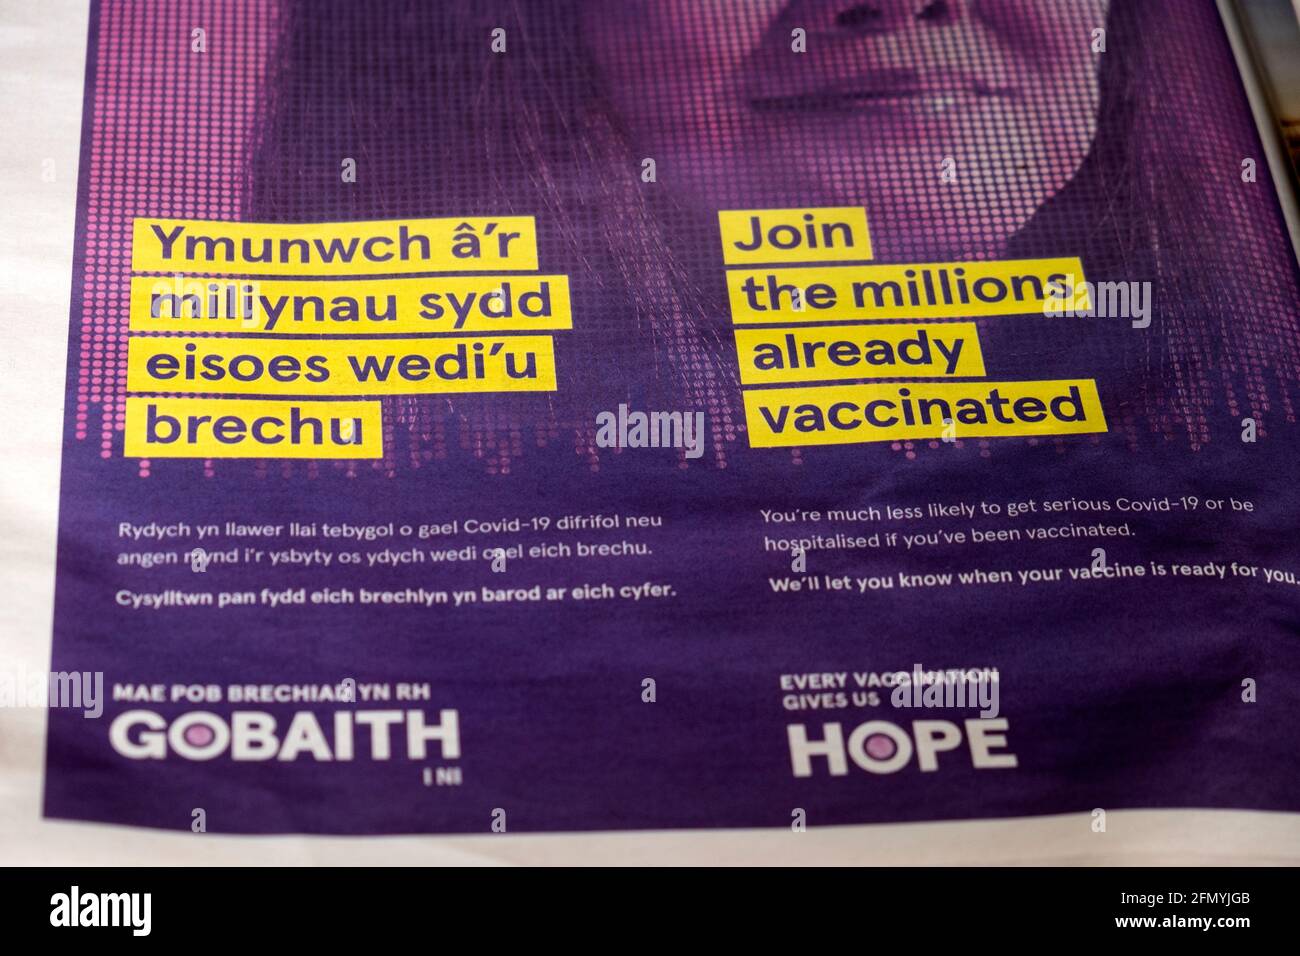 'Rejoignez les millions déjà vaccinés' langue galloise Gobaith Hope Covid-19 La vaccination dans le journal The Guardian avril 2021 Londres Royaume-Uni Banque D'Images